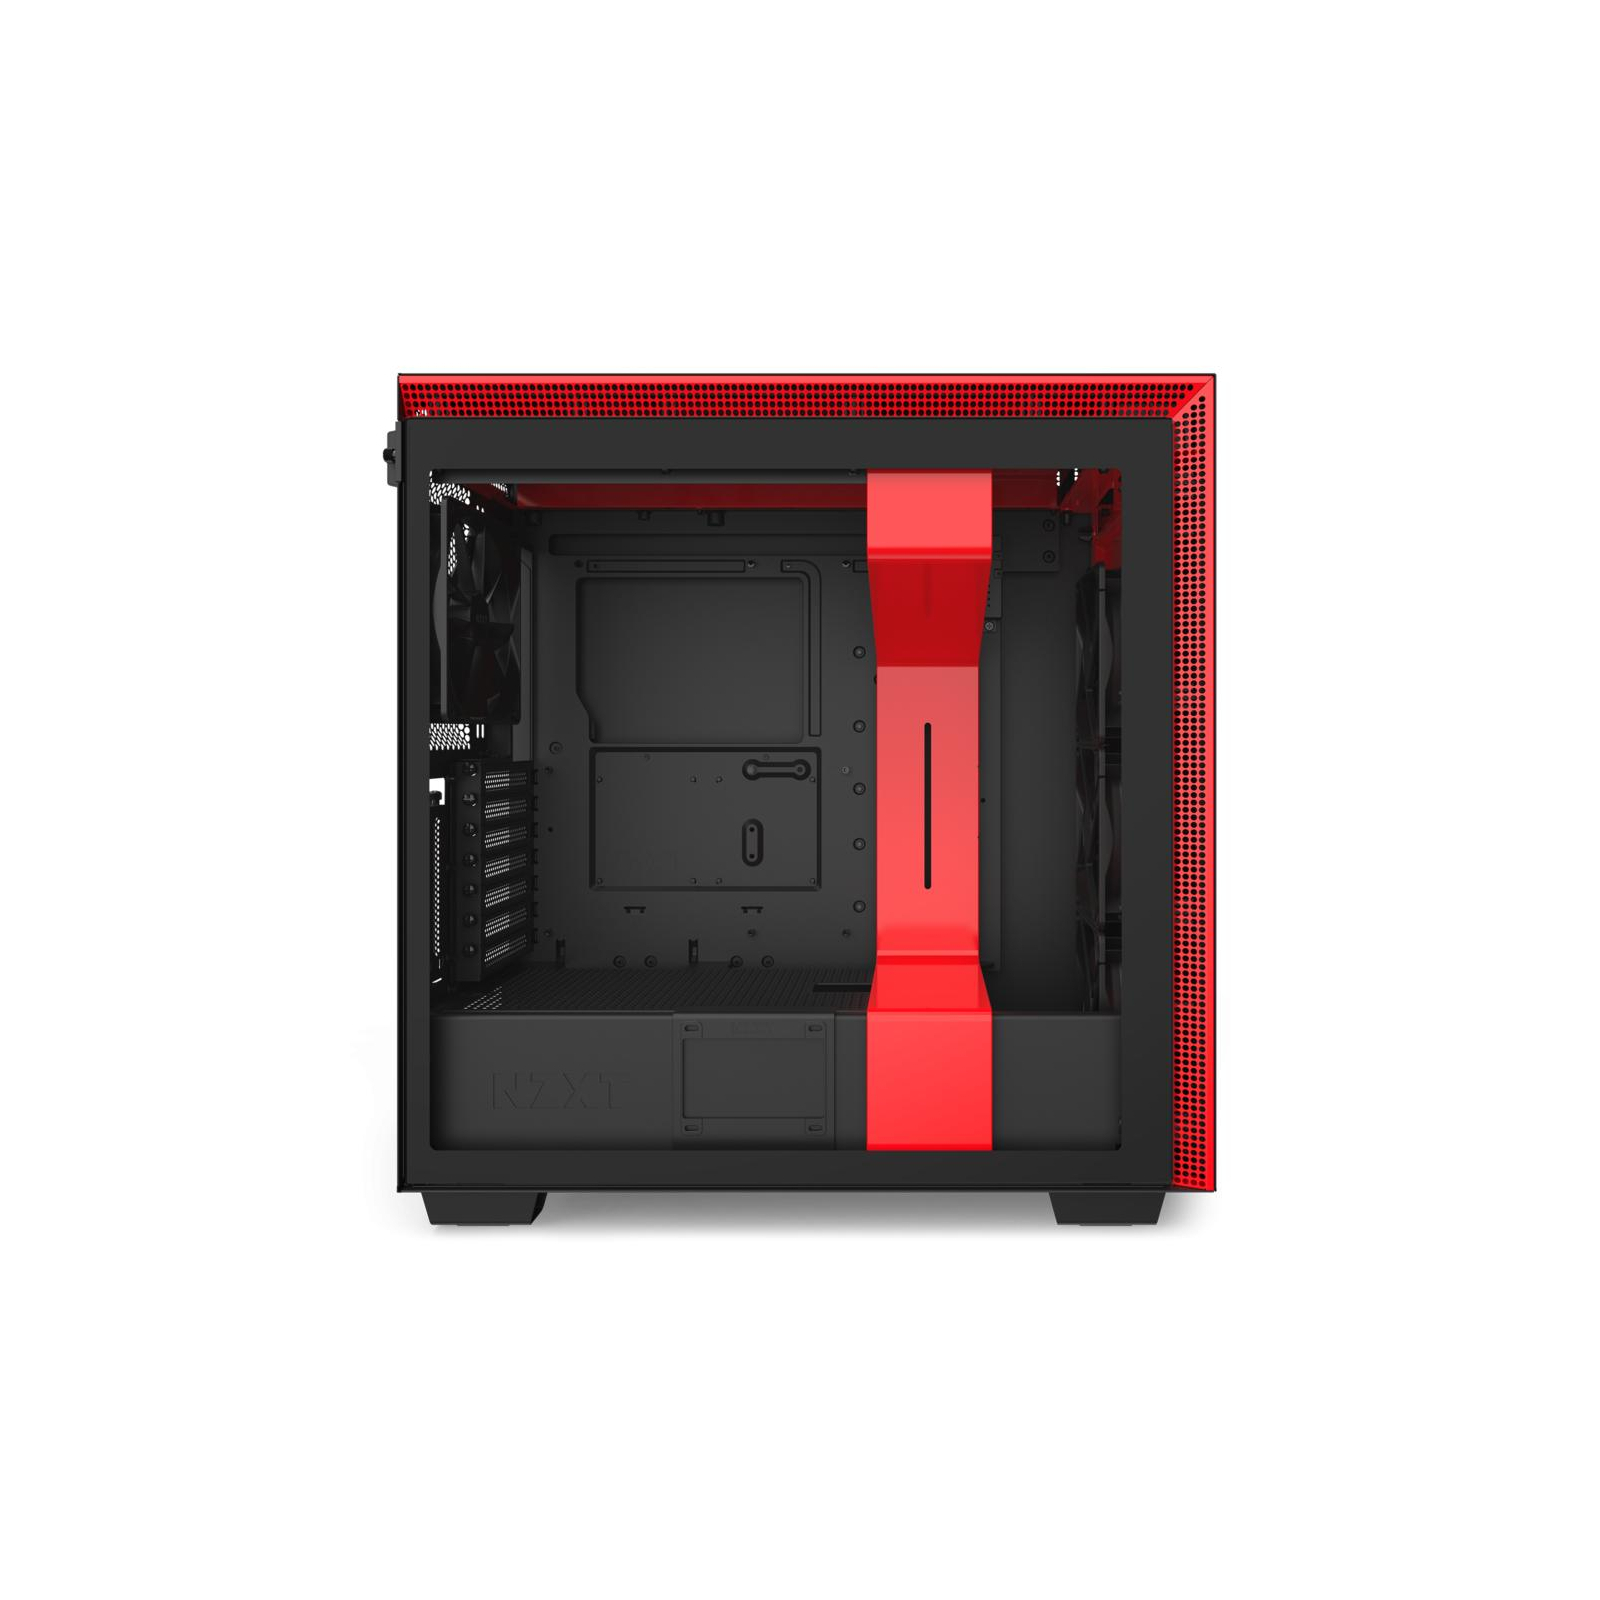 Корпус NZXT H710i Black/Red (CA-H710i-BR) изображение 6